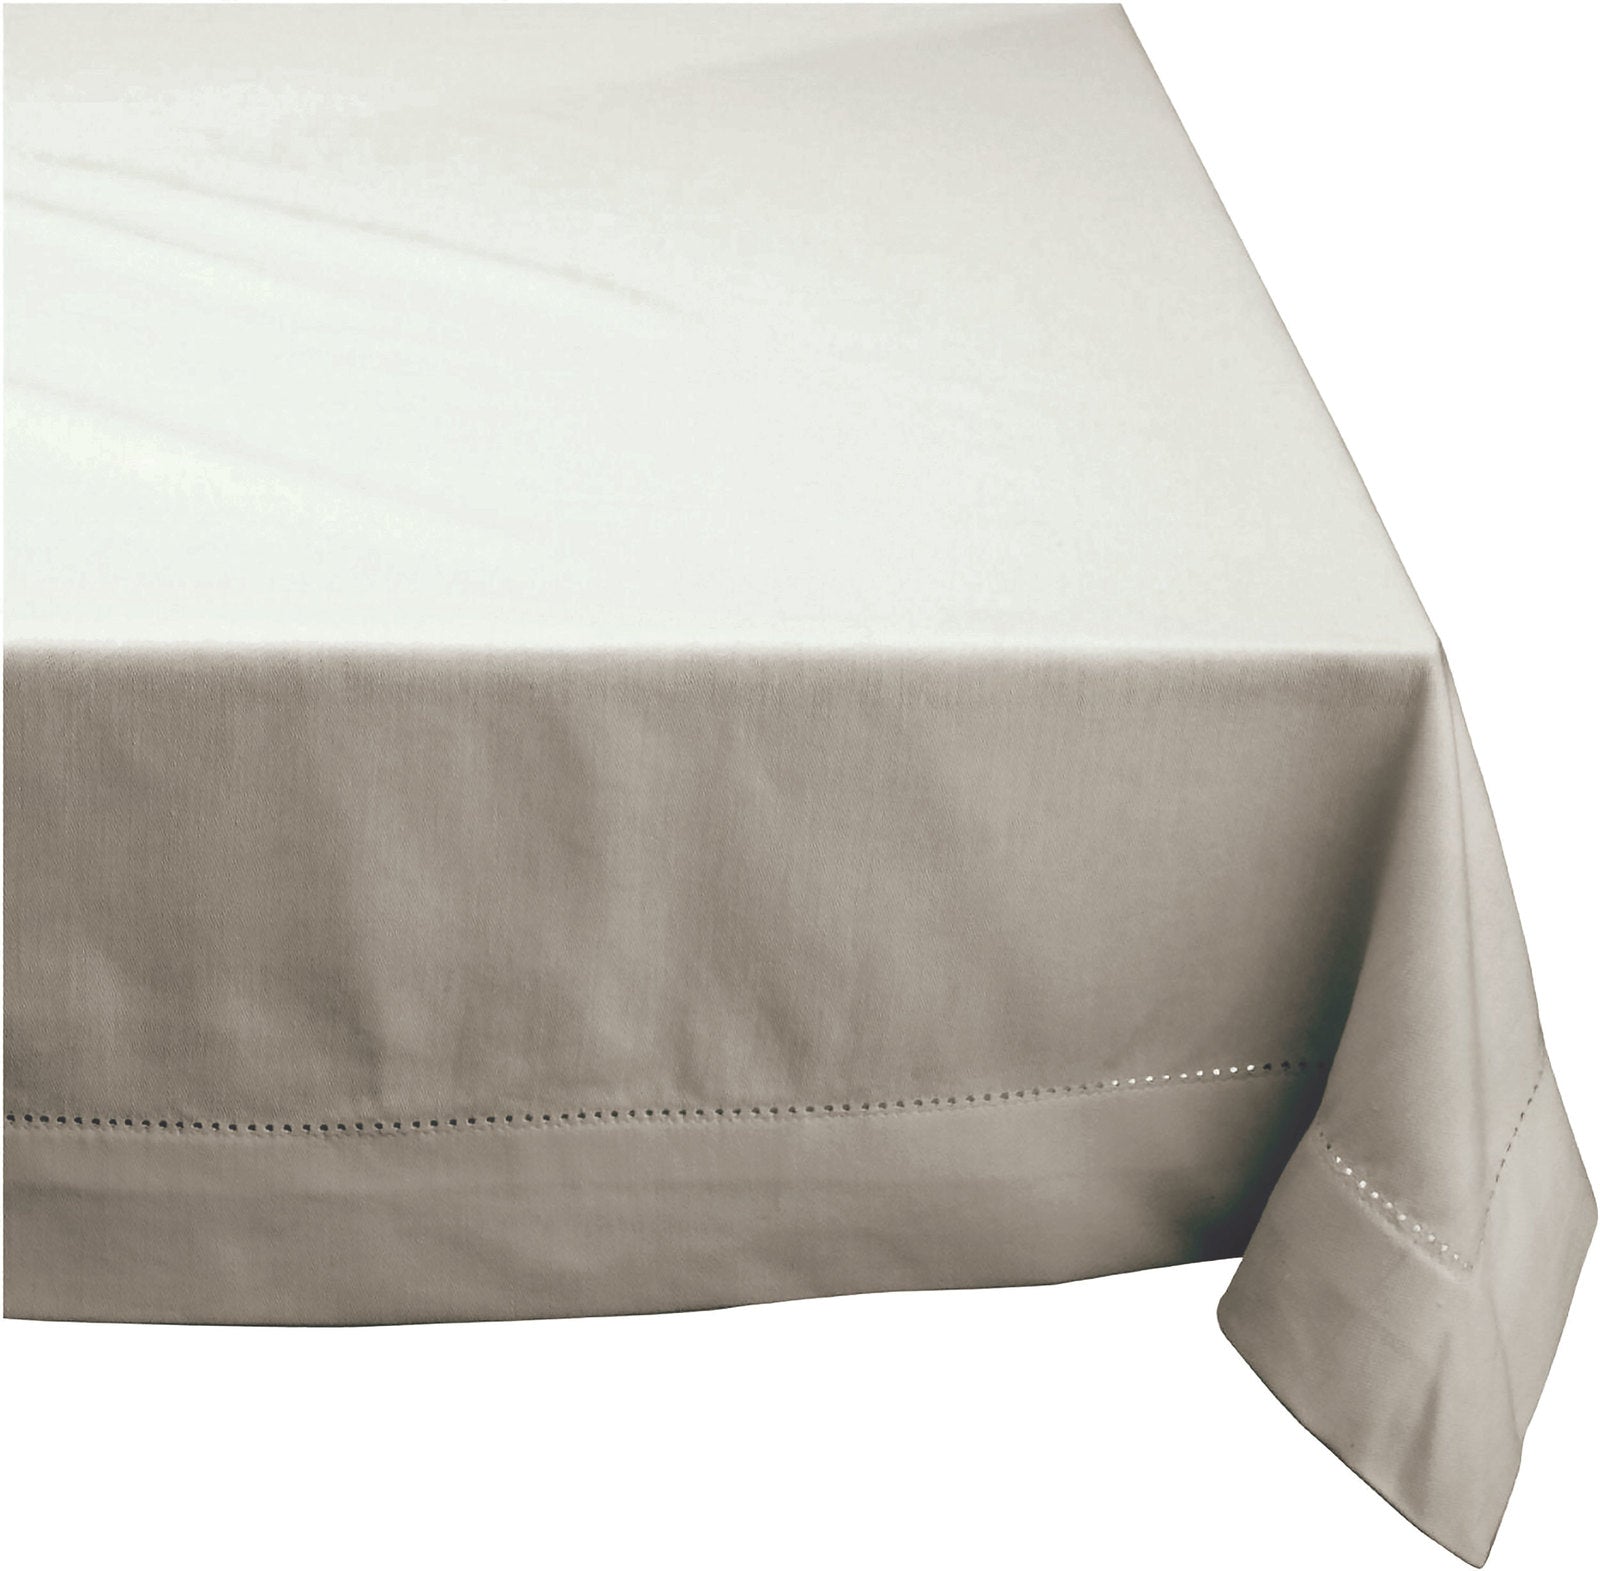 Elegant Hemstitch Tablecloth - 100% Cotton - 130x180cm in Grey